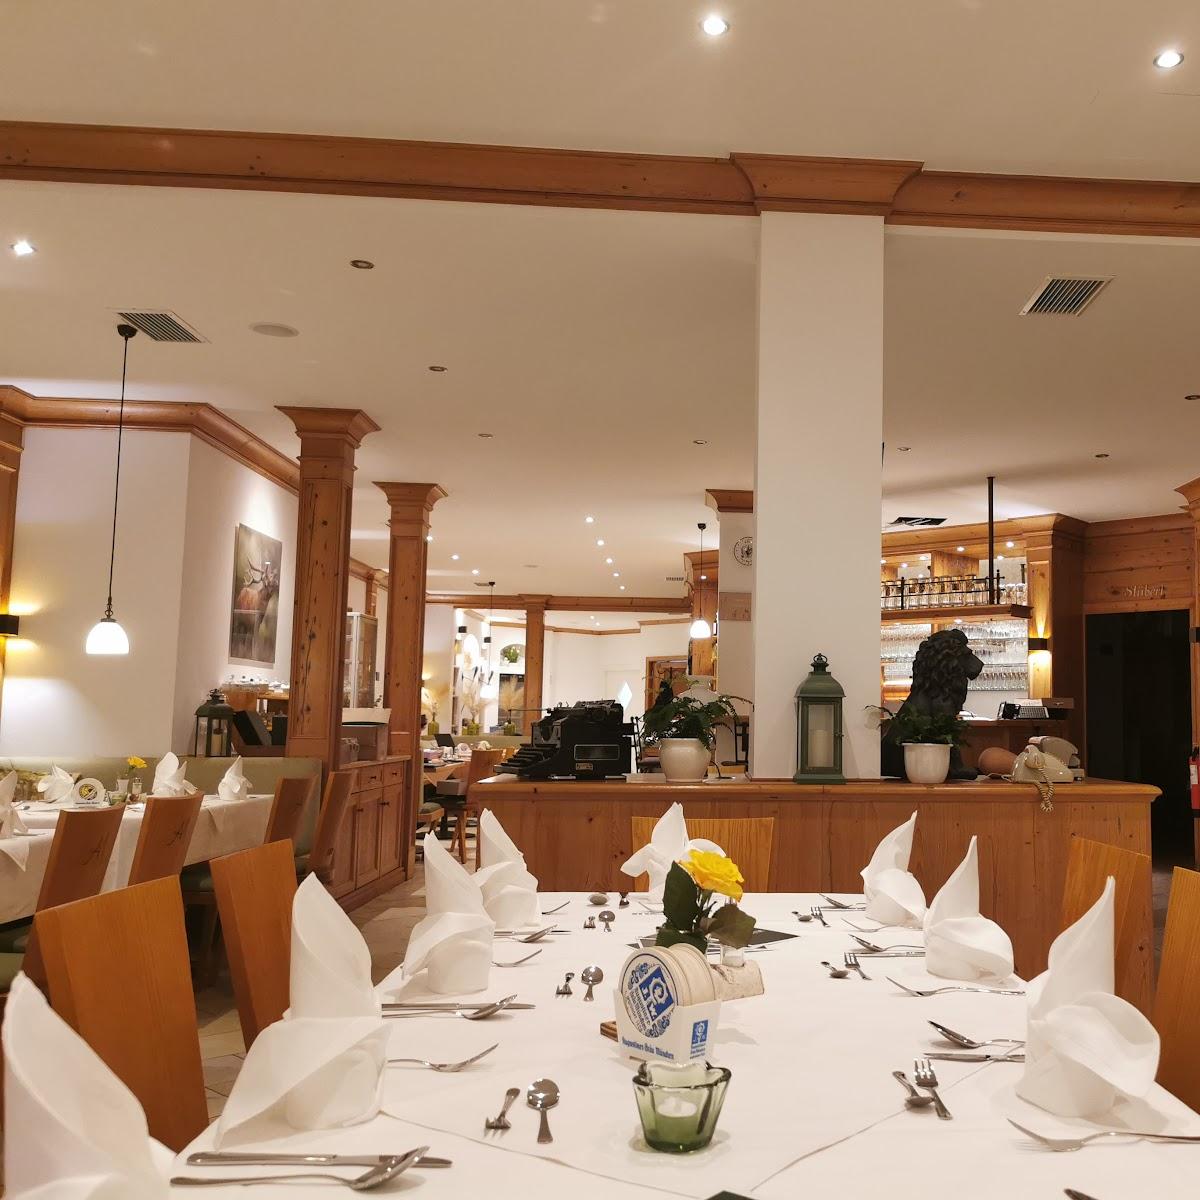 Restaurant "Altes Magistrat" in Pfarrkirchen